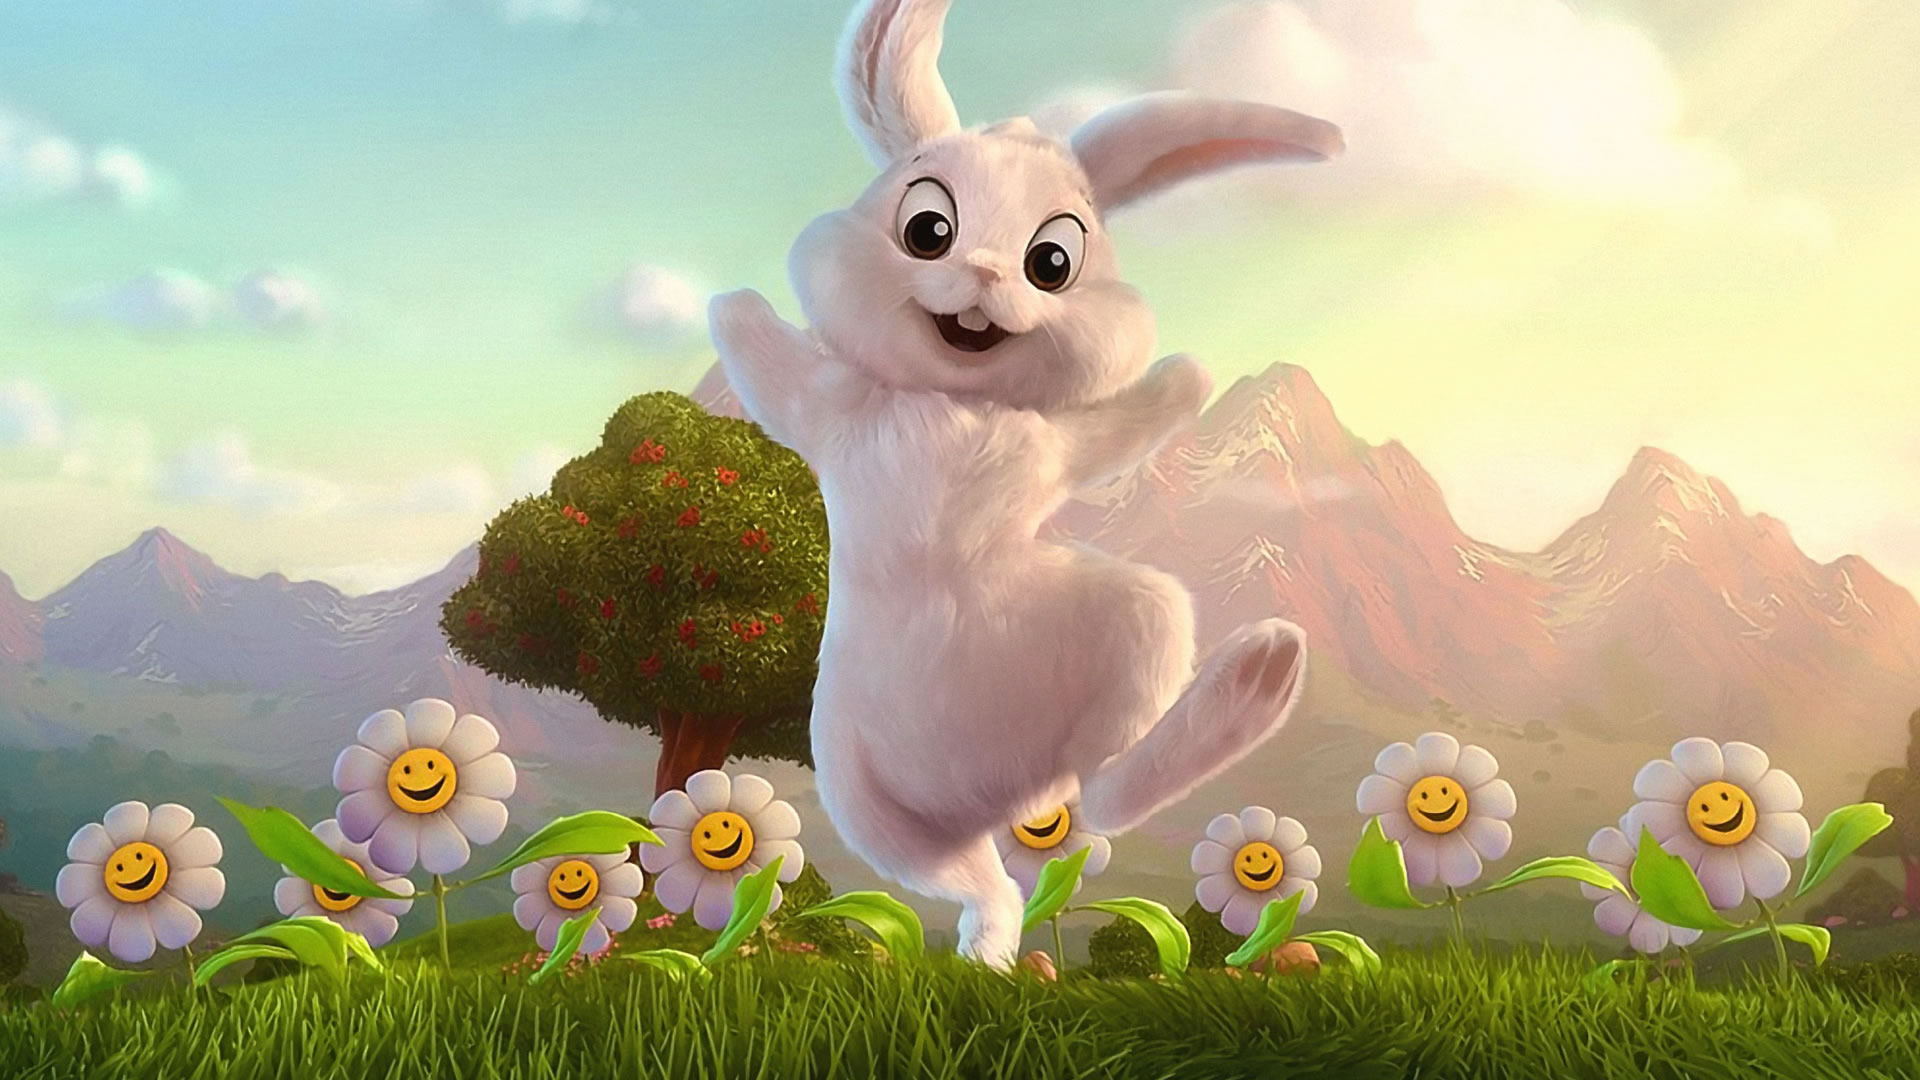 かわいい漫画の壁紙,アニメ,ウサギとウサギ,ウサギ,野ウサギ,飼いウサギ